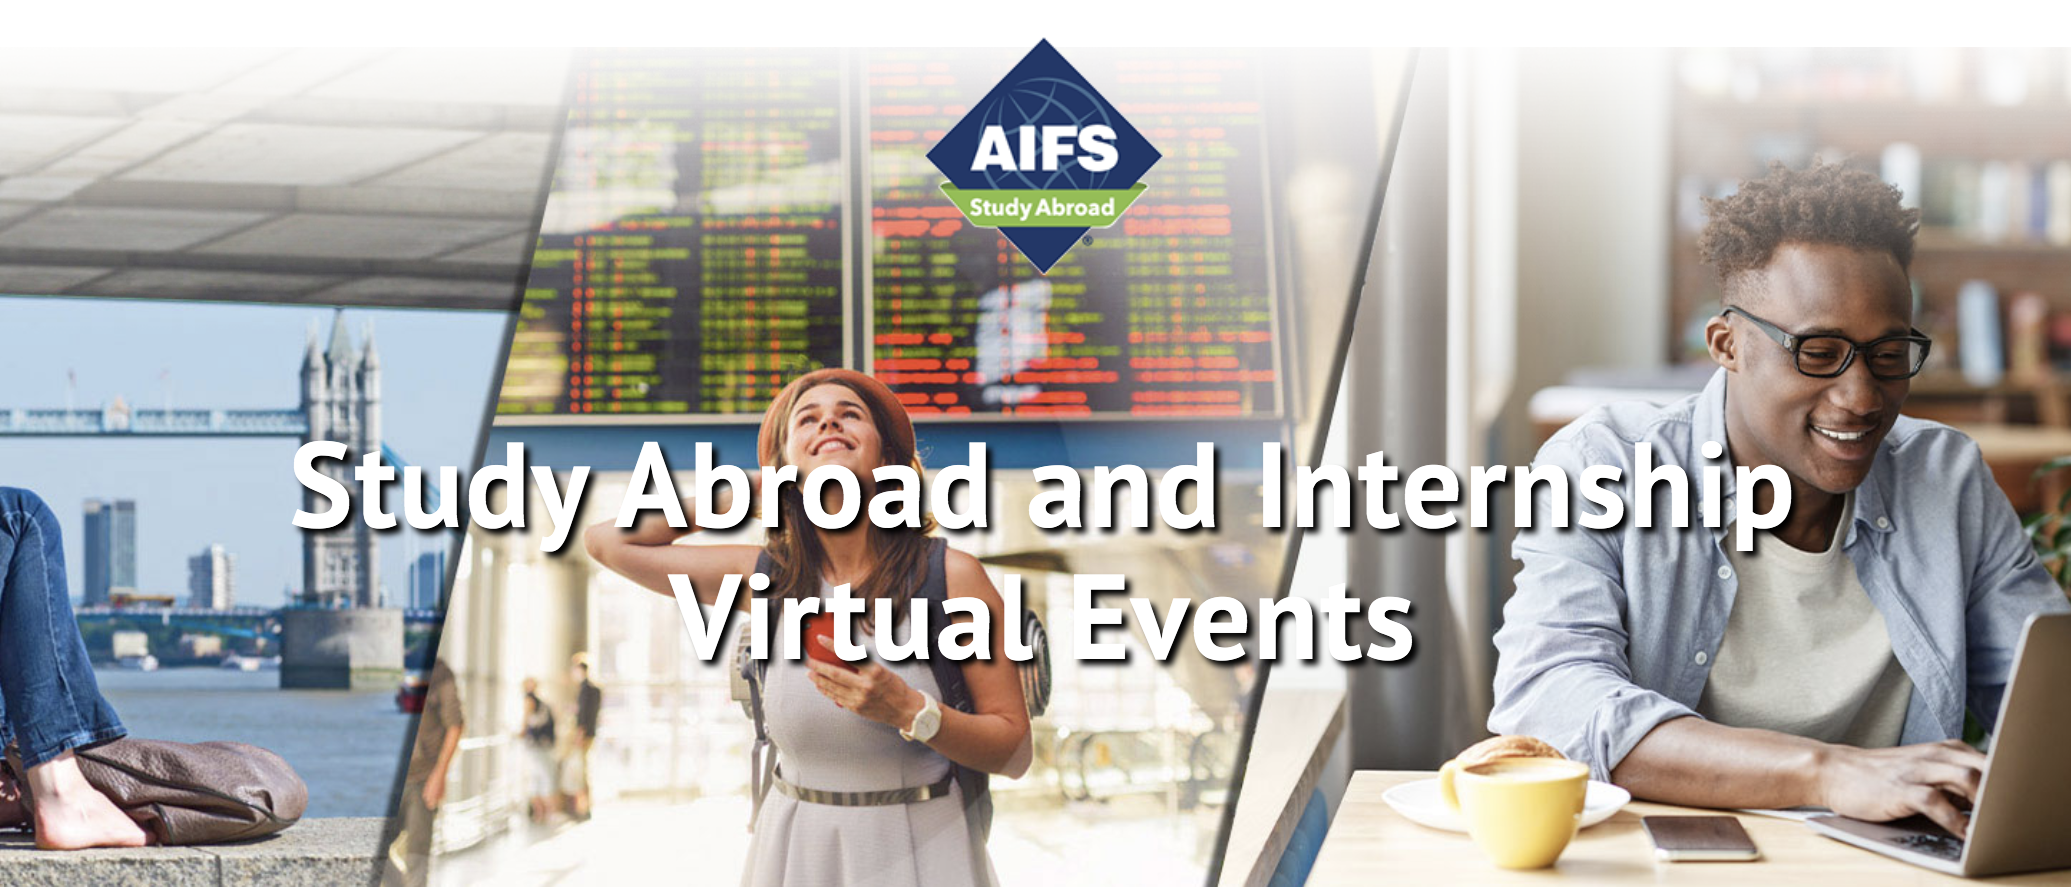 AIFS Virtual Events